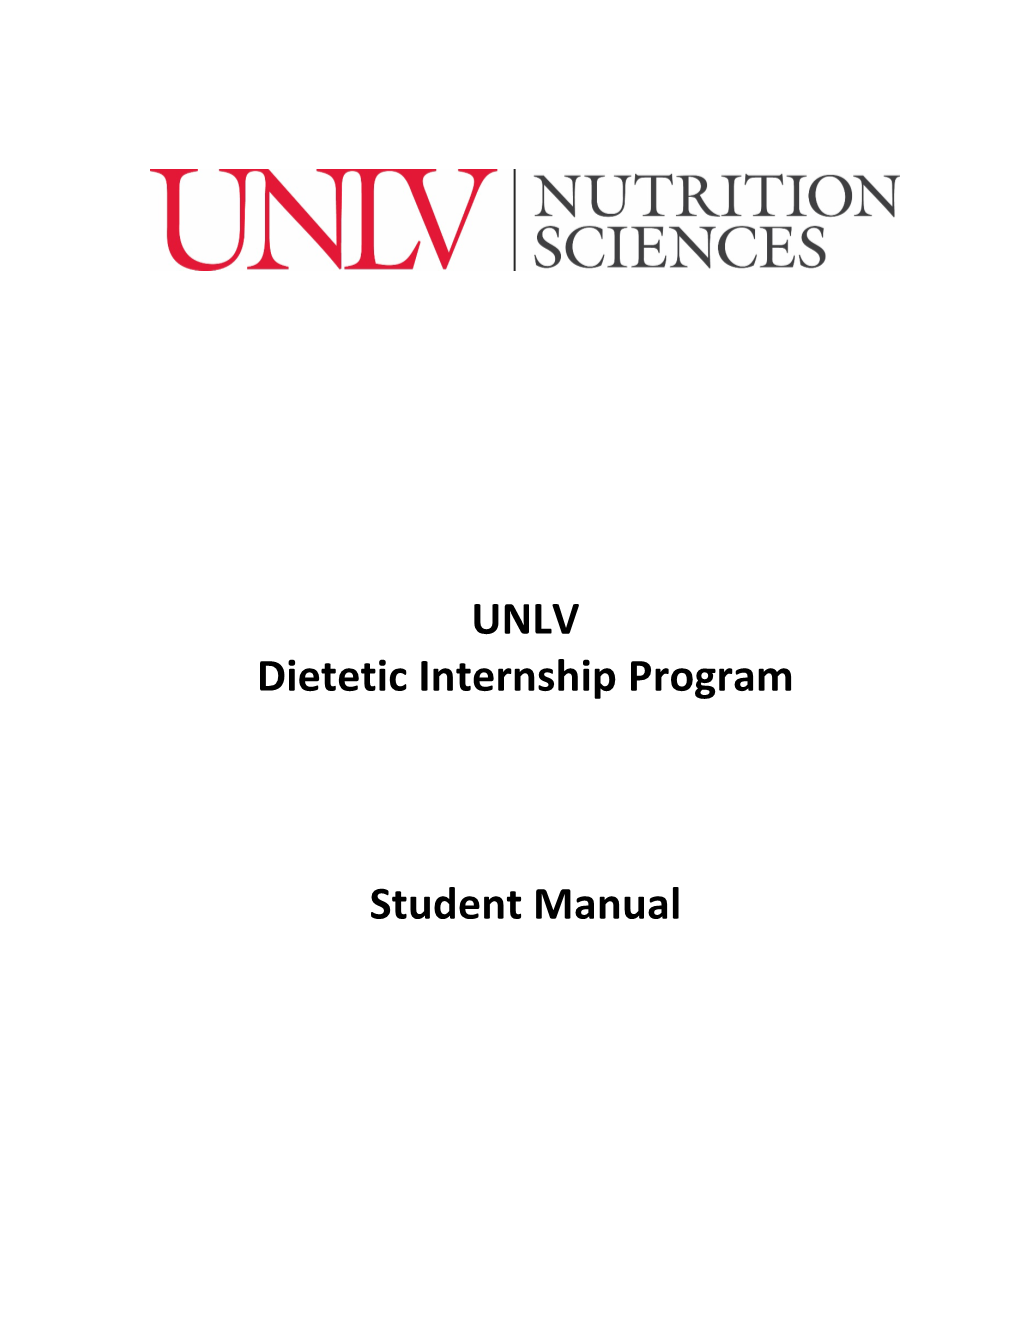 UNLV Dietetic Internship Program Student Manual